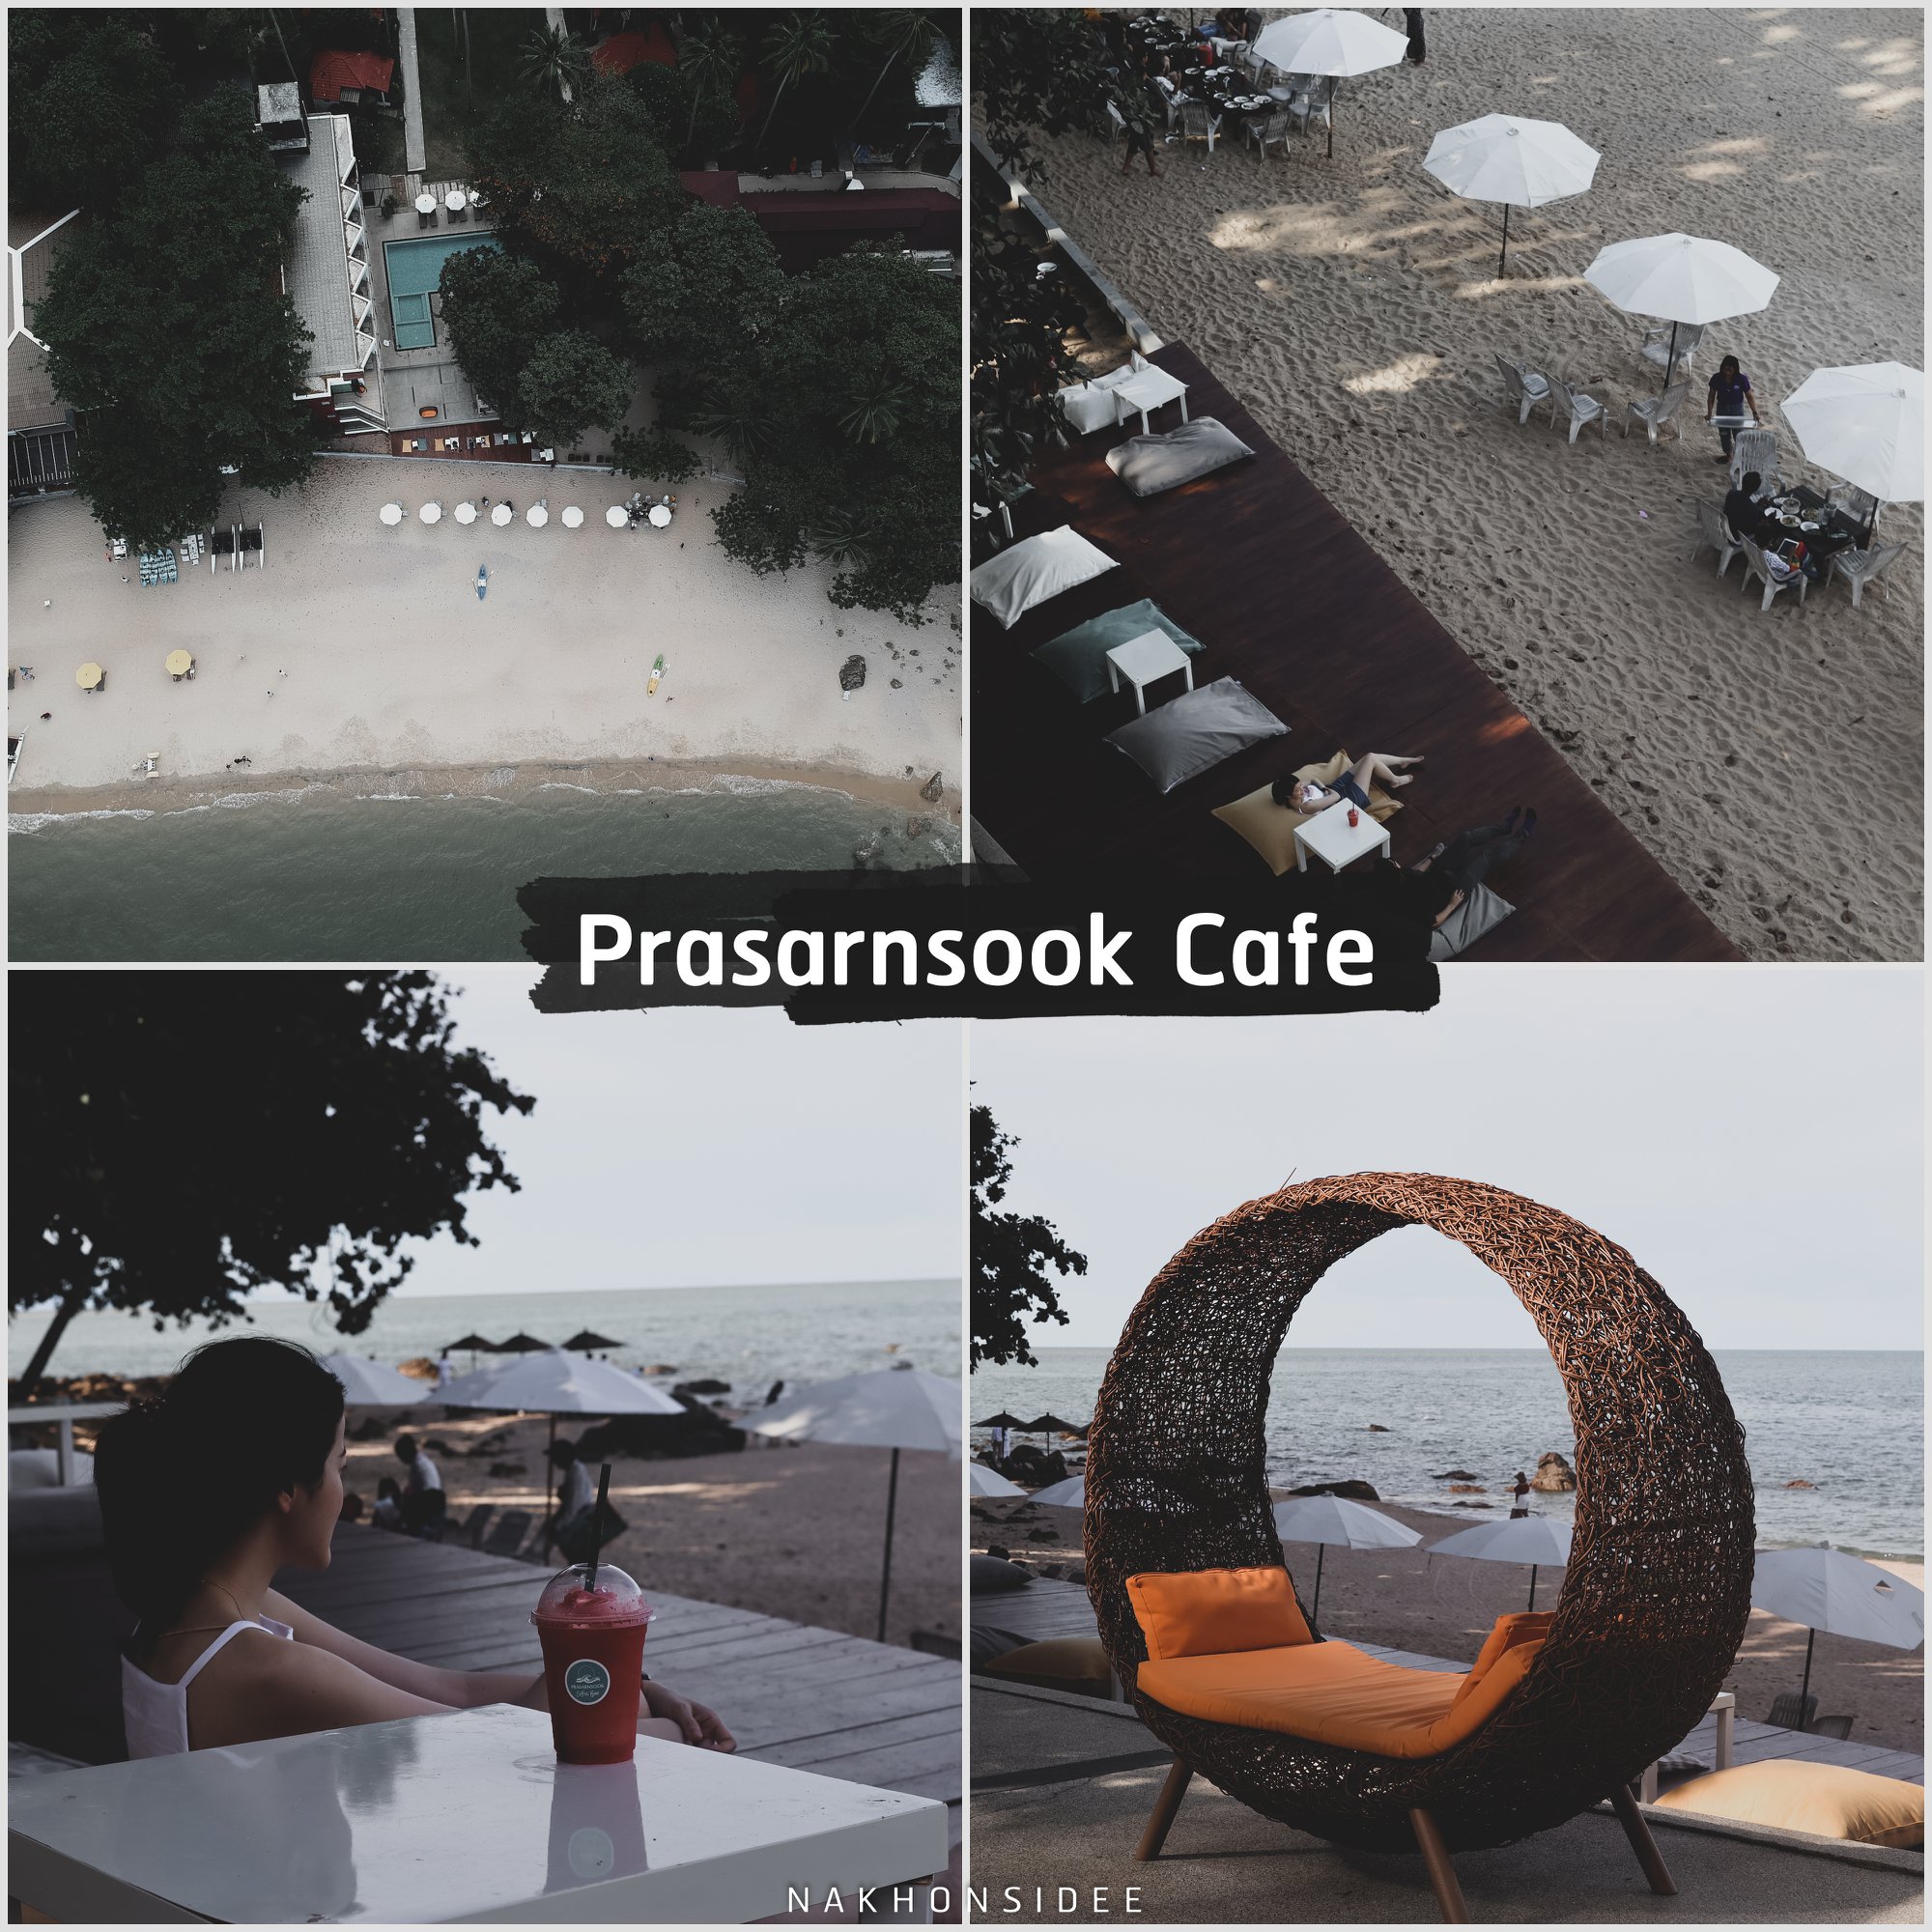  Prasarnsook-Cafe

คลิกที่นี่ คาเฟ่สวย,วิวหลักล้าน,นครศรีธรรมราช,รวมcafe,คาเฟ่,ร้านอาหาร,ร้านกาแฟ,ภูเขา